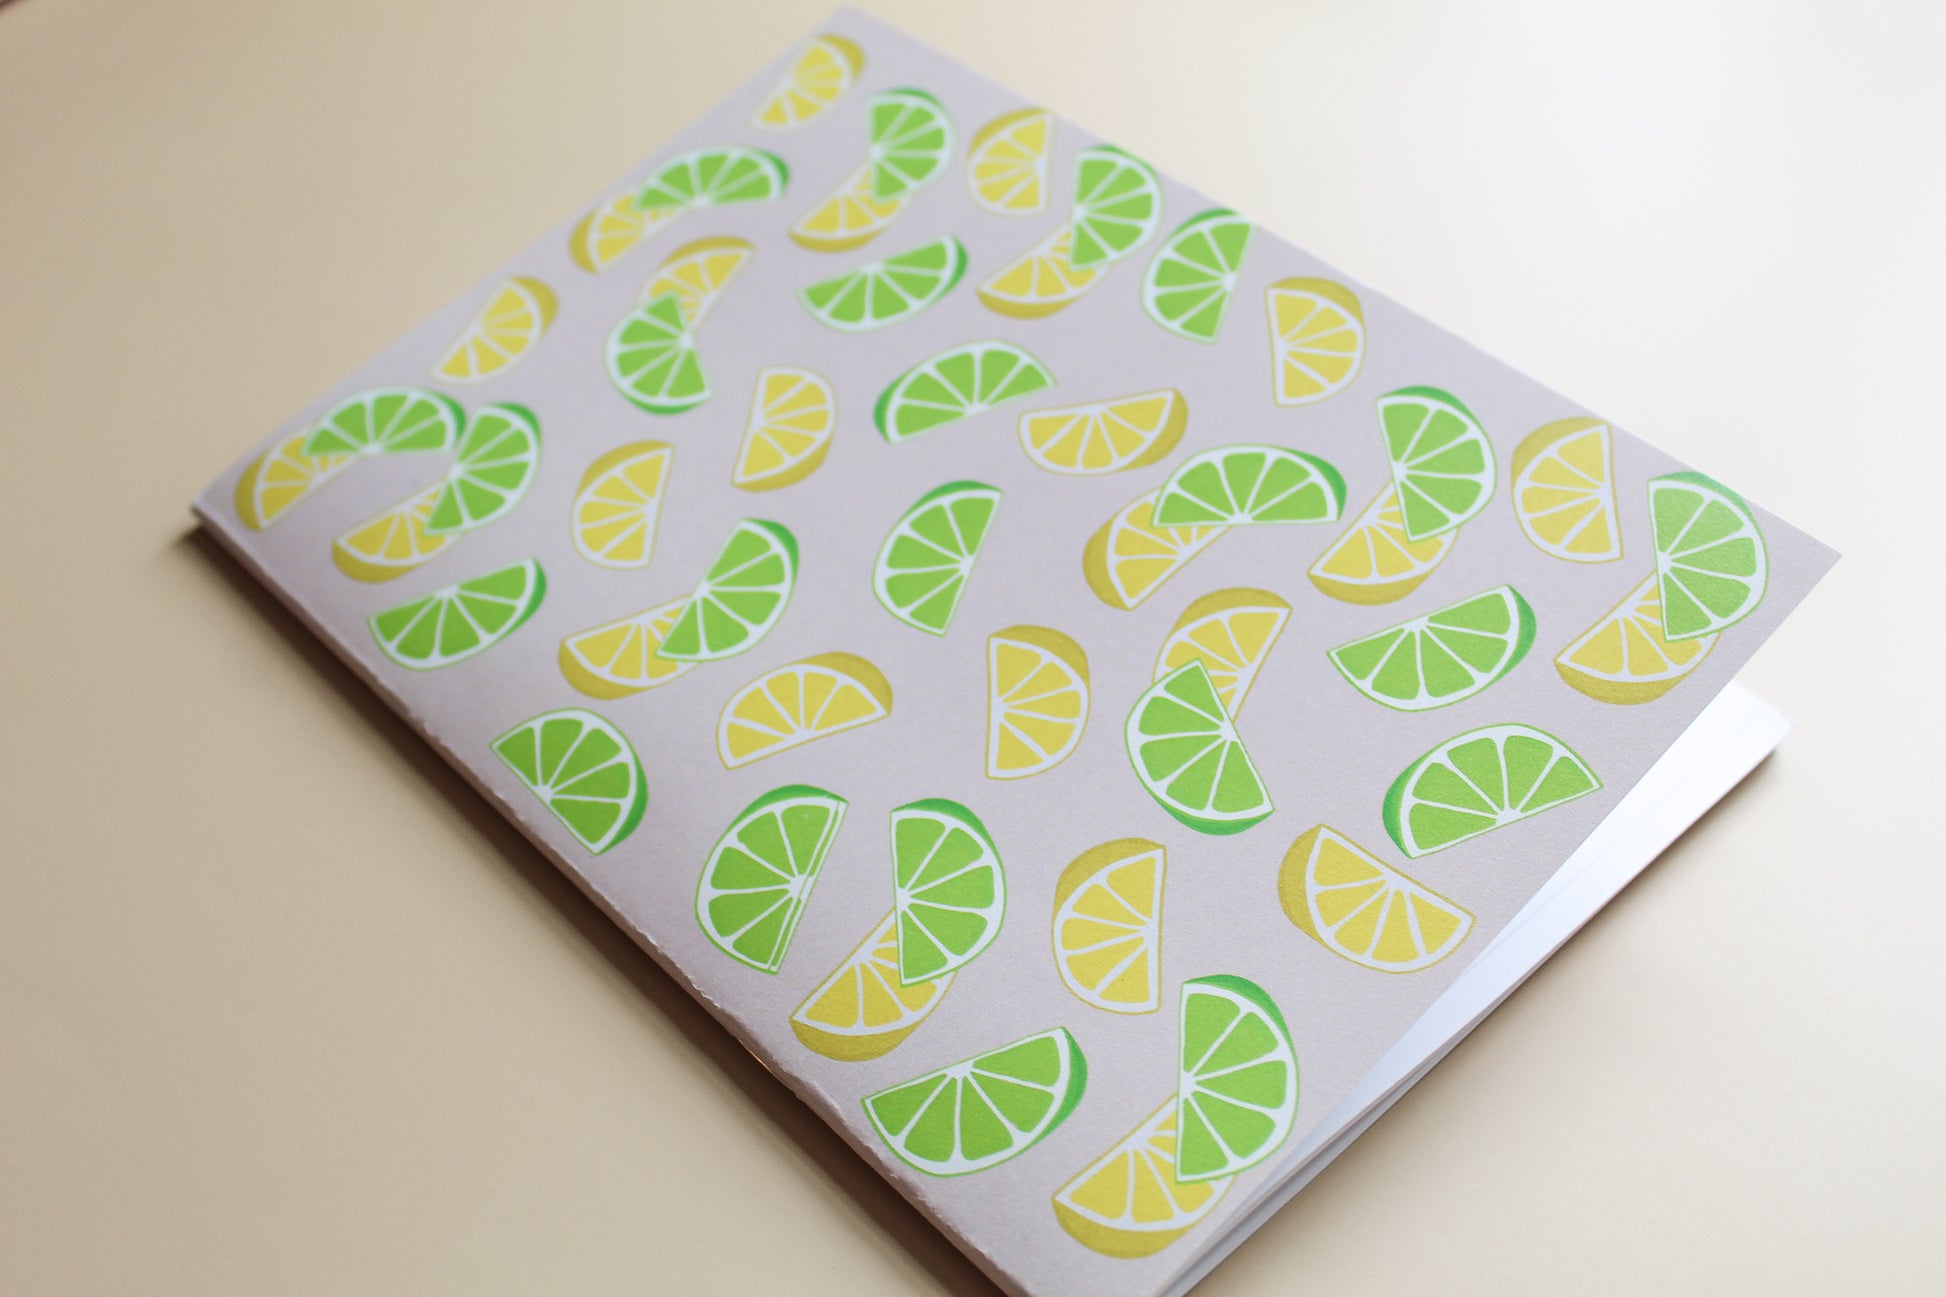 Lemon lime journal, summertime journal, prayer journal 